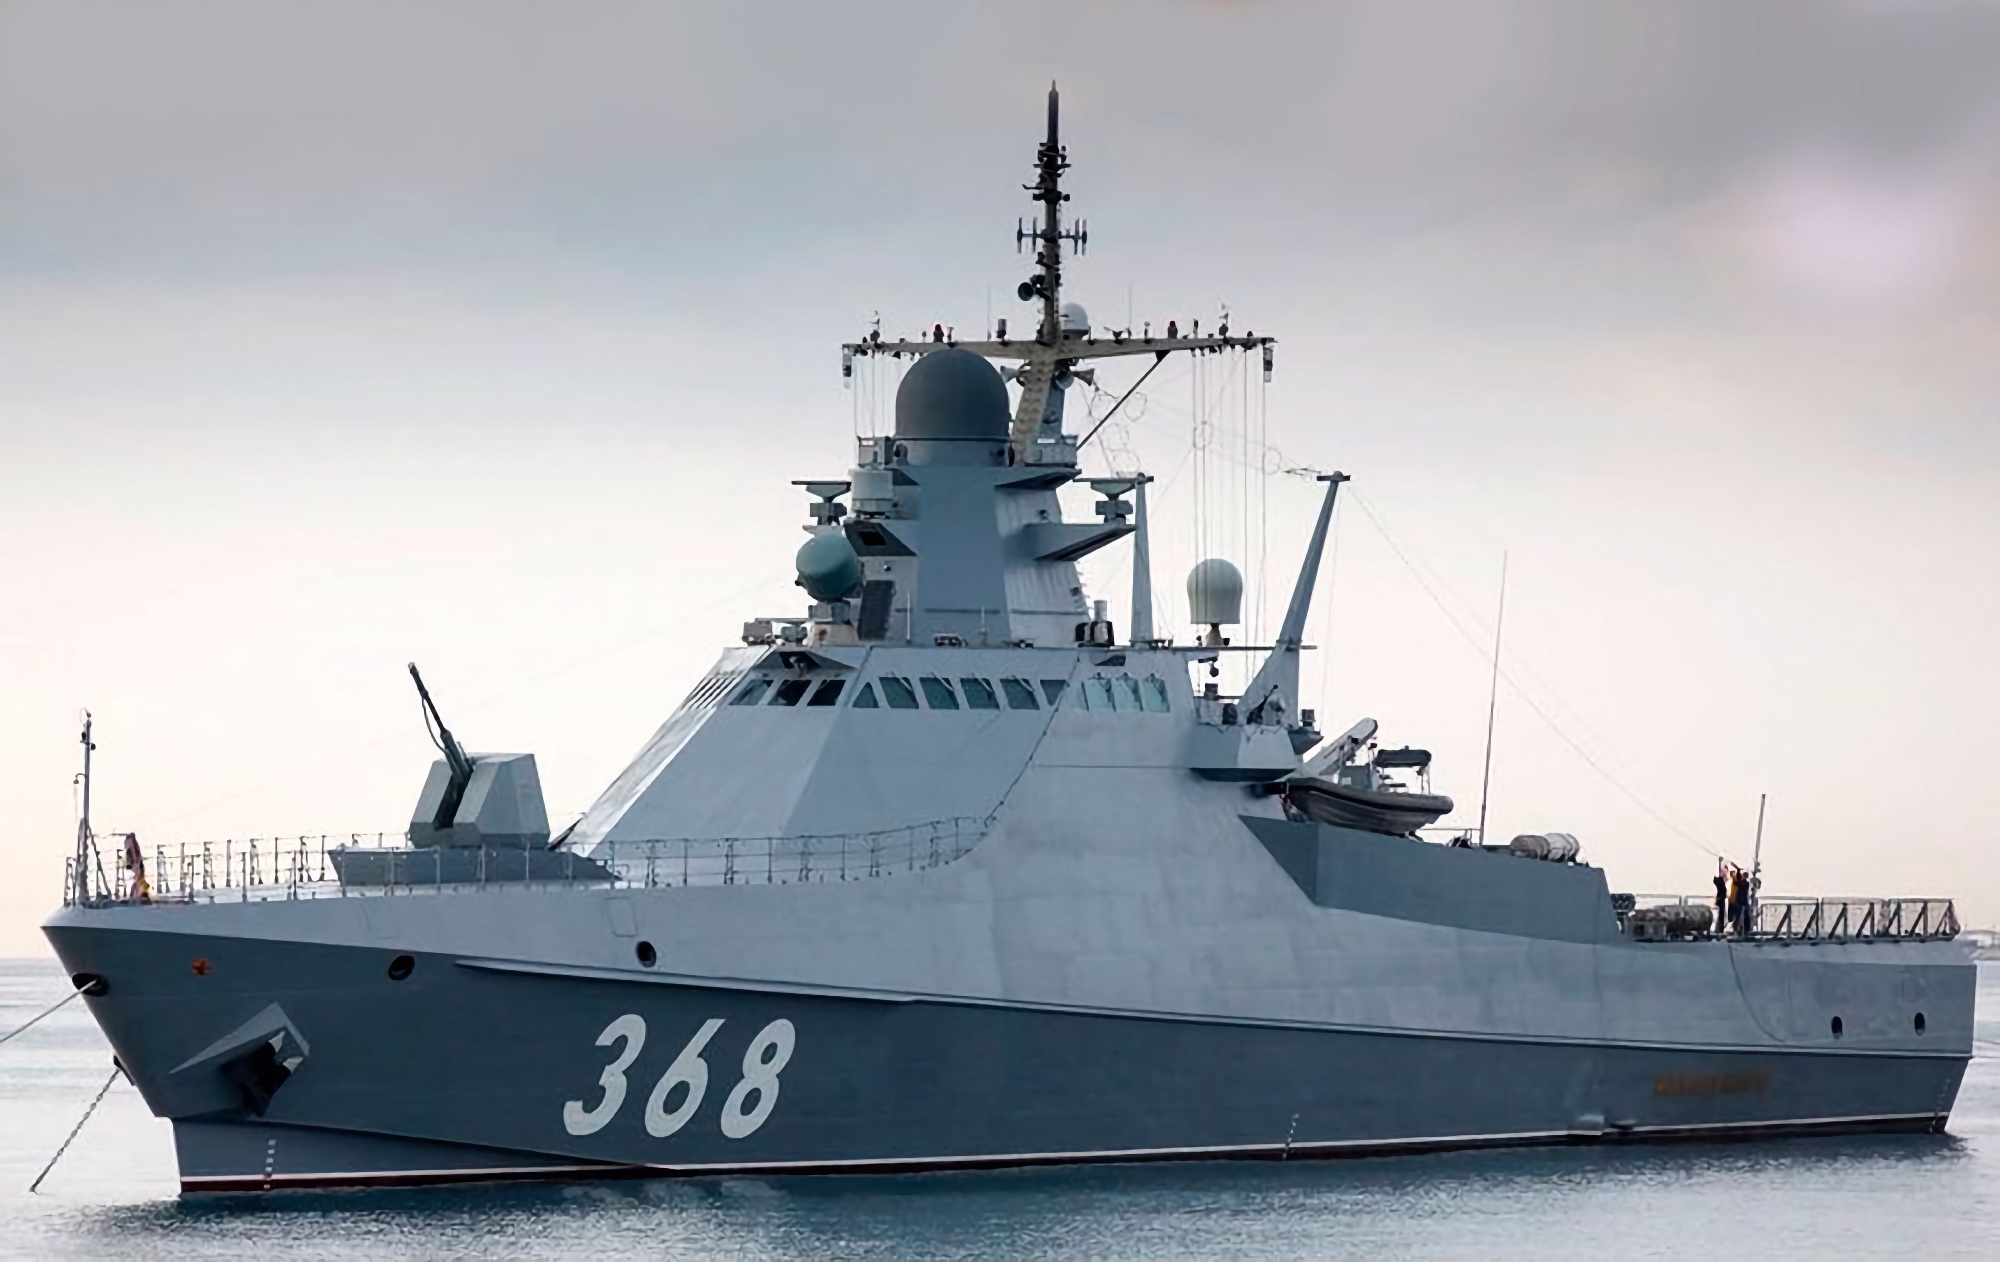 Ukraińska jednostka specjalna Grupa 13 z pomocą drona morskiego Magura V5 zniszczyła rosyjski statek projektu 22160 "Siergiej Kotow" o wartości 65 milionów dolarów.